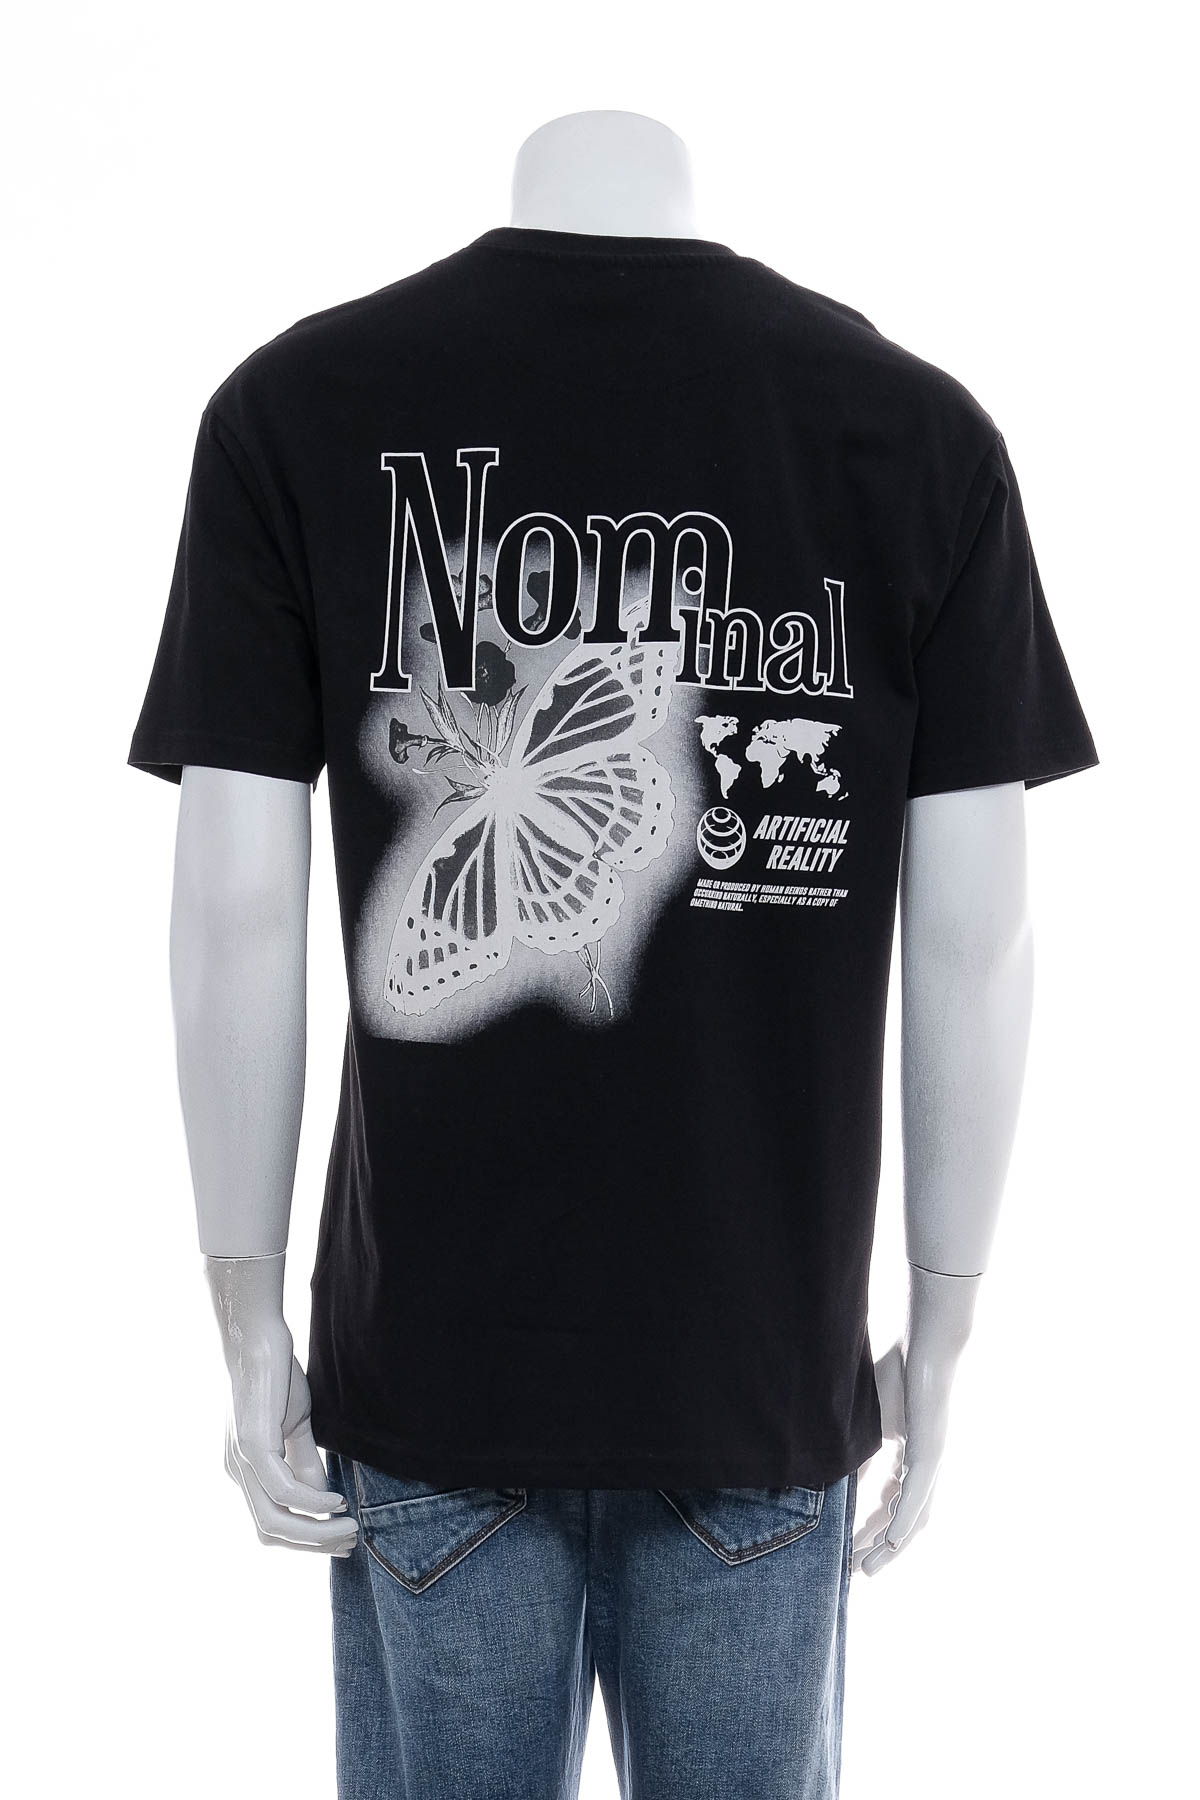 Αντρική μπλούζα - Nominal - 1